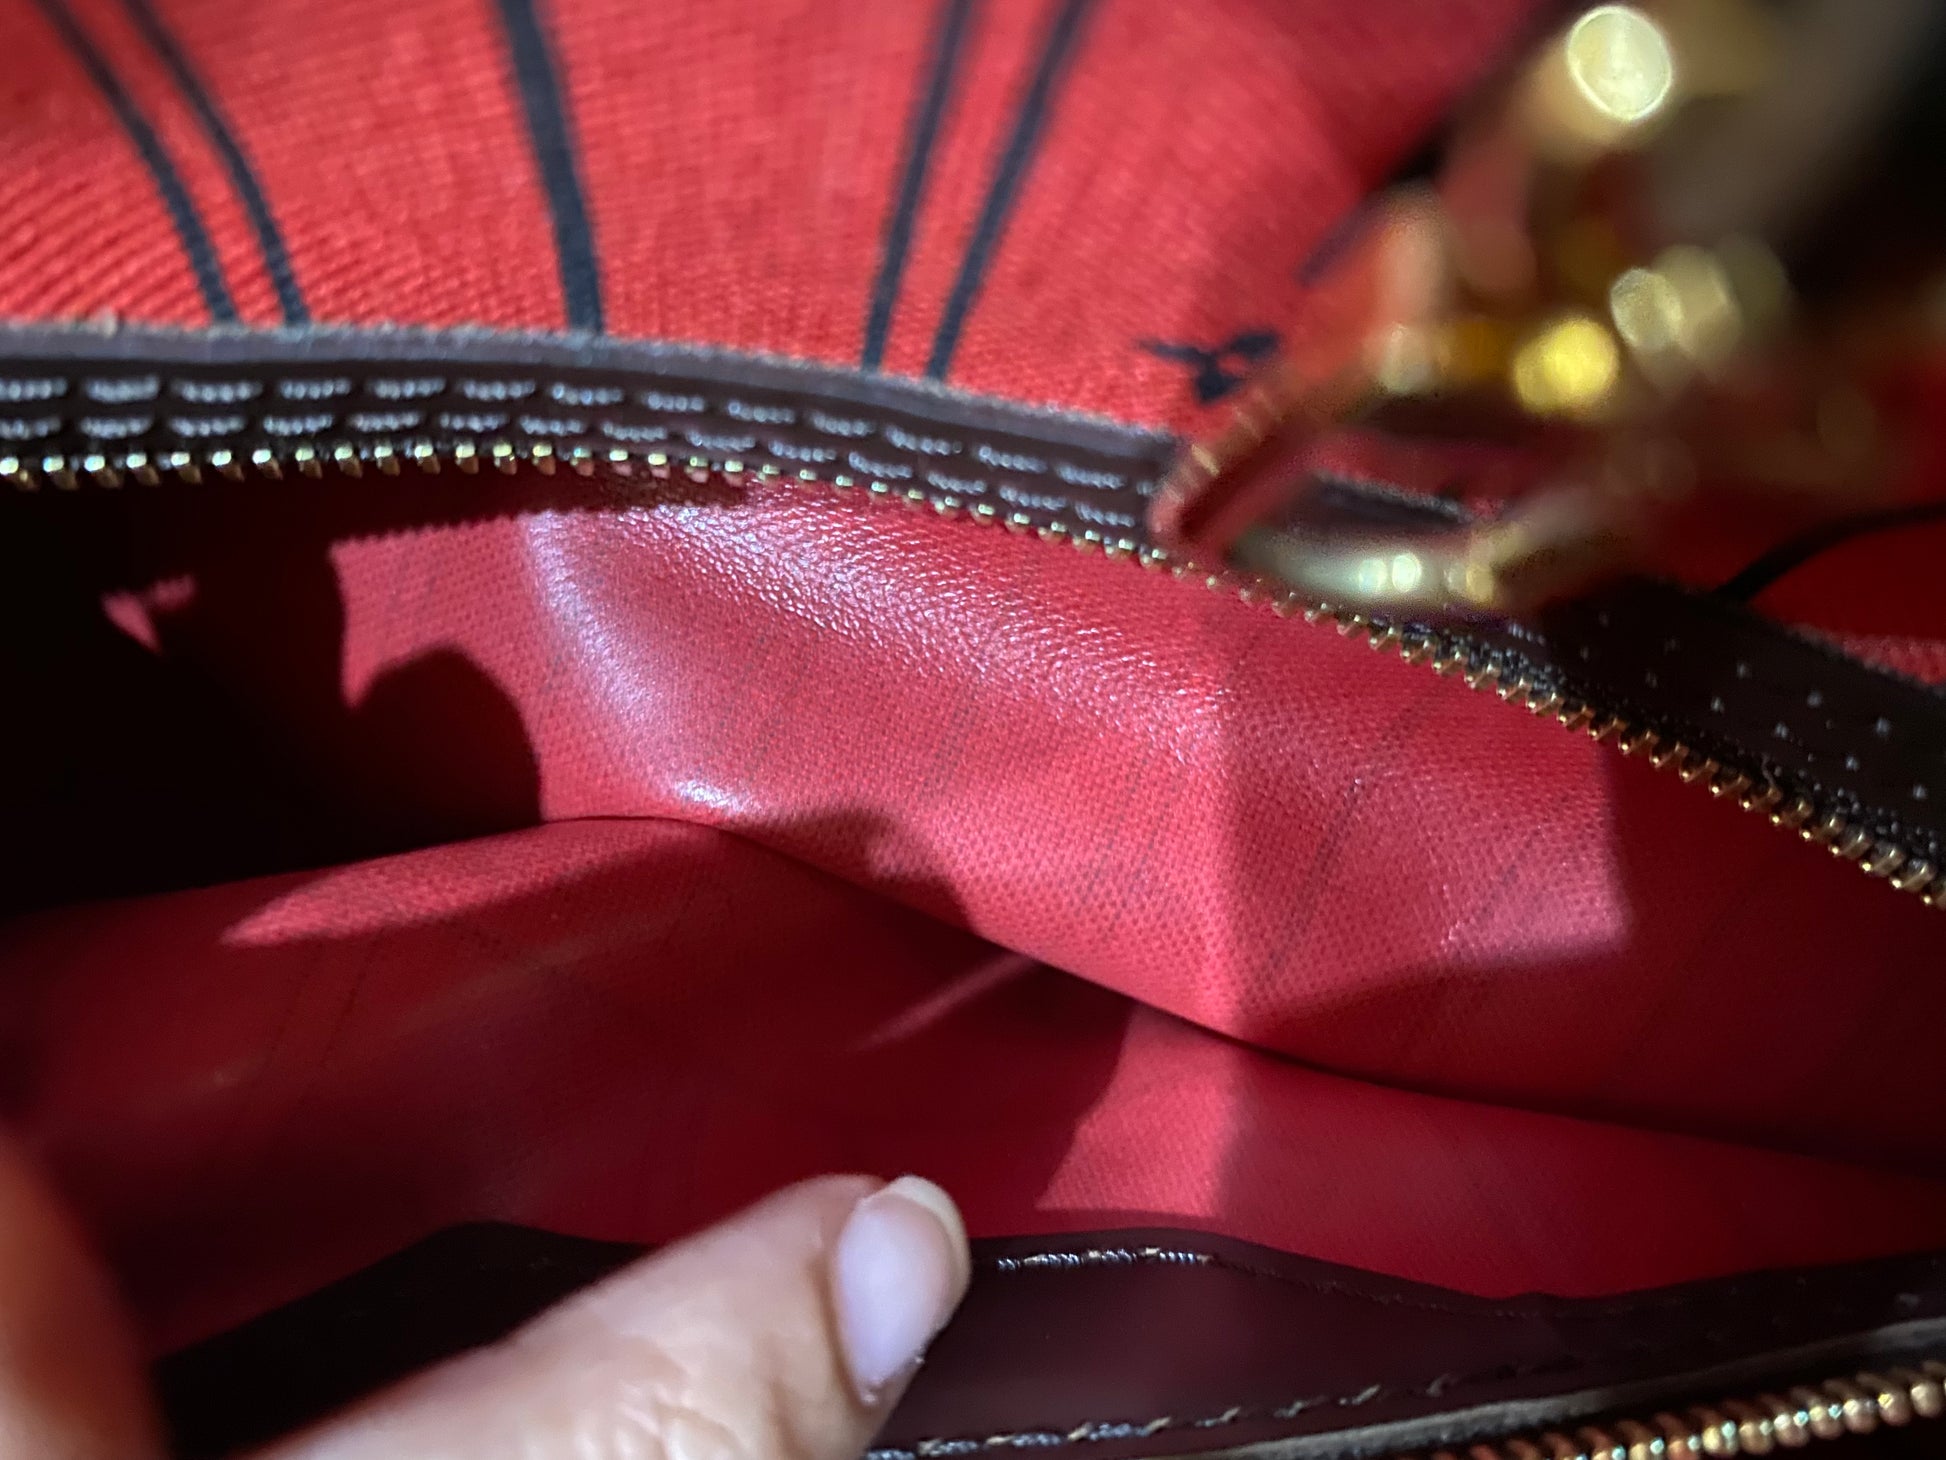 Authentic Louis Vuitton Neverfull MM Damier Ebene – Esys Handbags Boutique